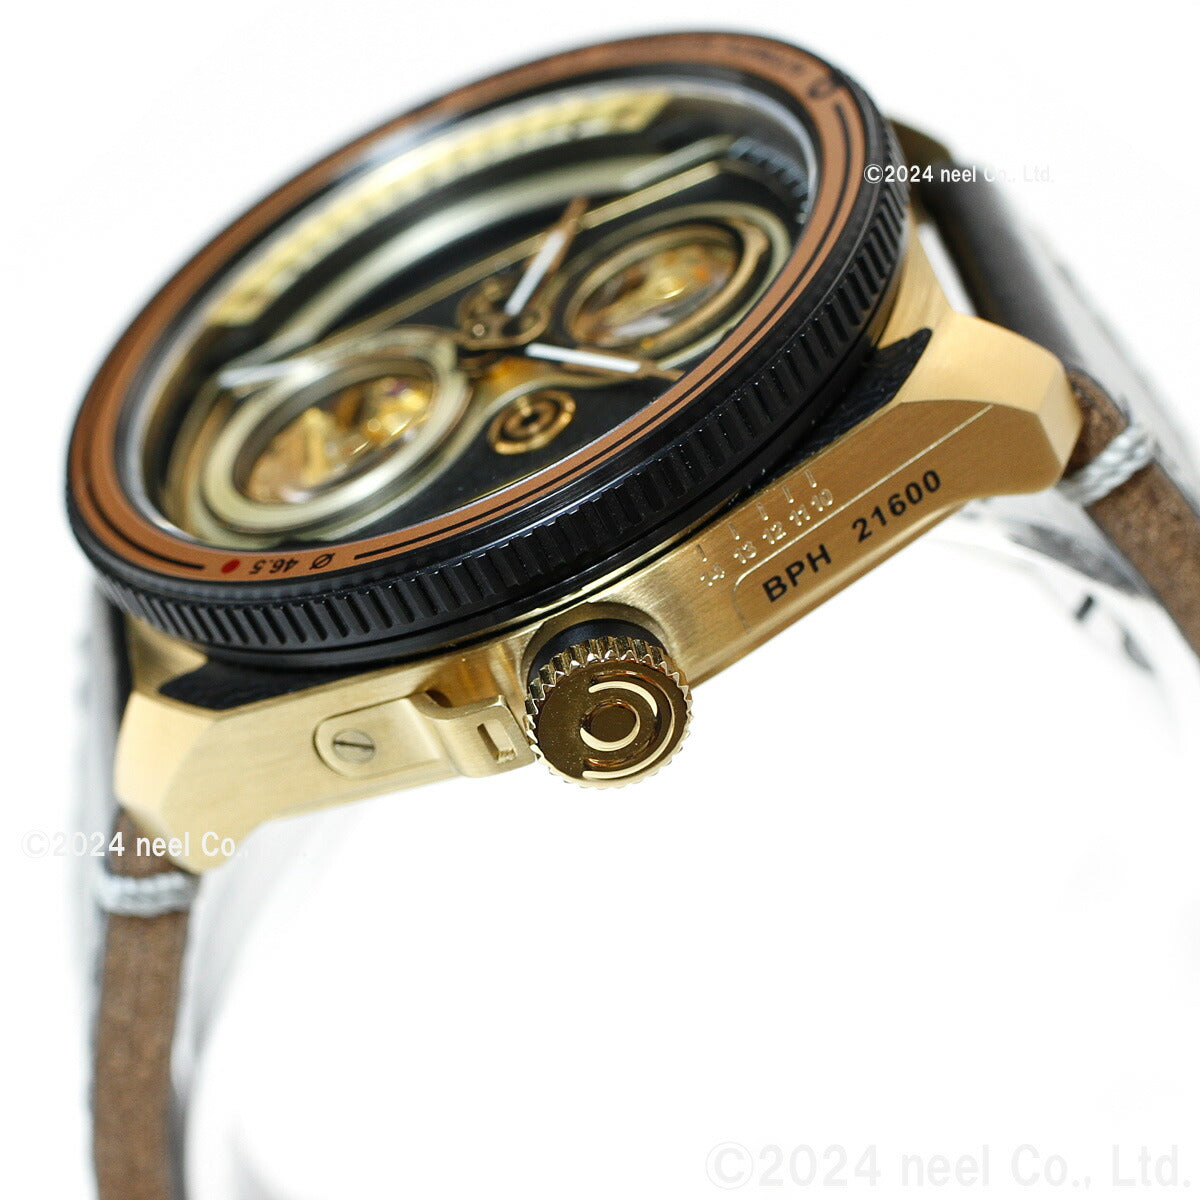 タックス TACS 腕時計 メンズ レディース ツインレンズ TWIN LENS 自動巻き TS2002B レトロ ゴールド